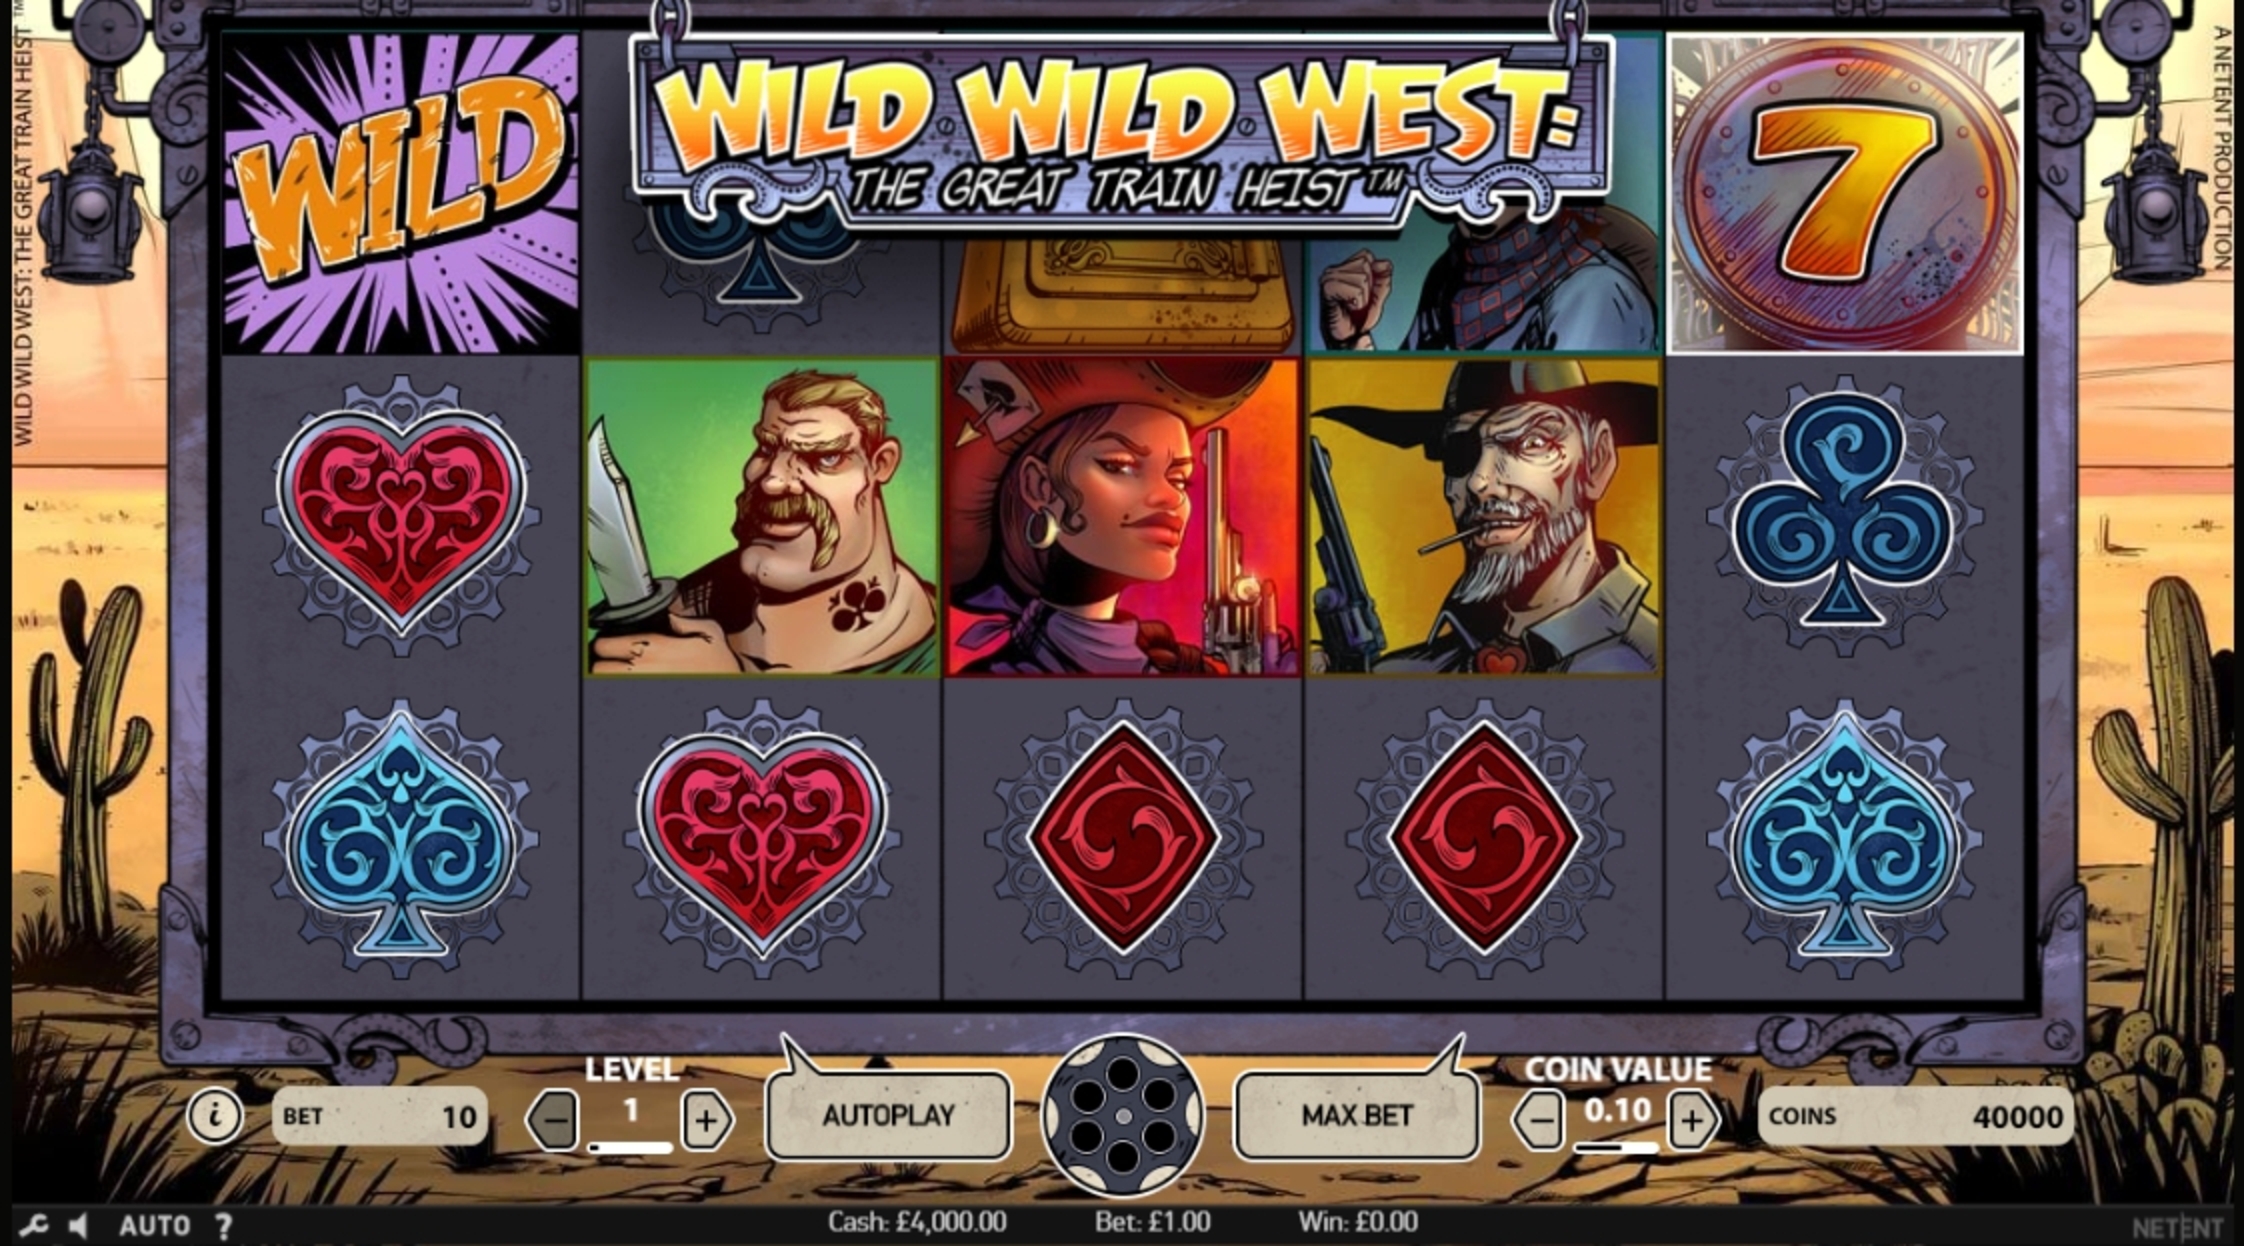 Wild Wild West demo play, Slot Machine Online by NetEnt